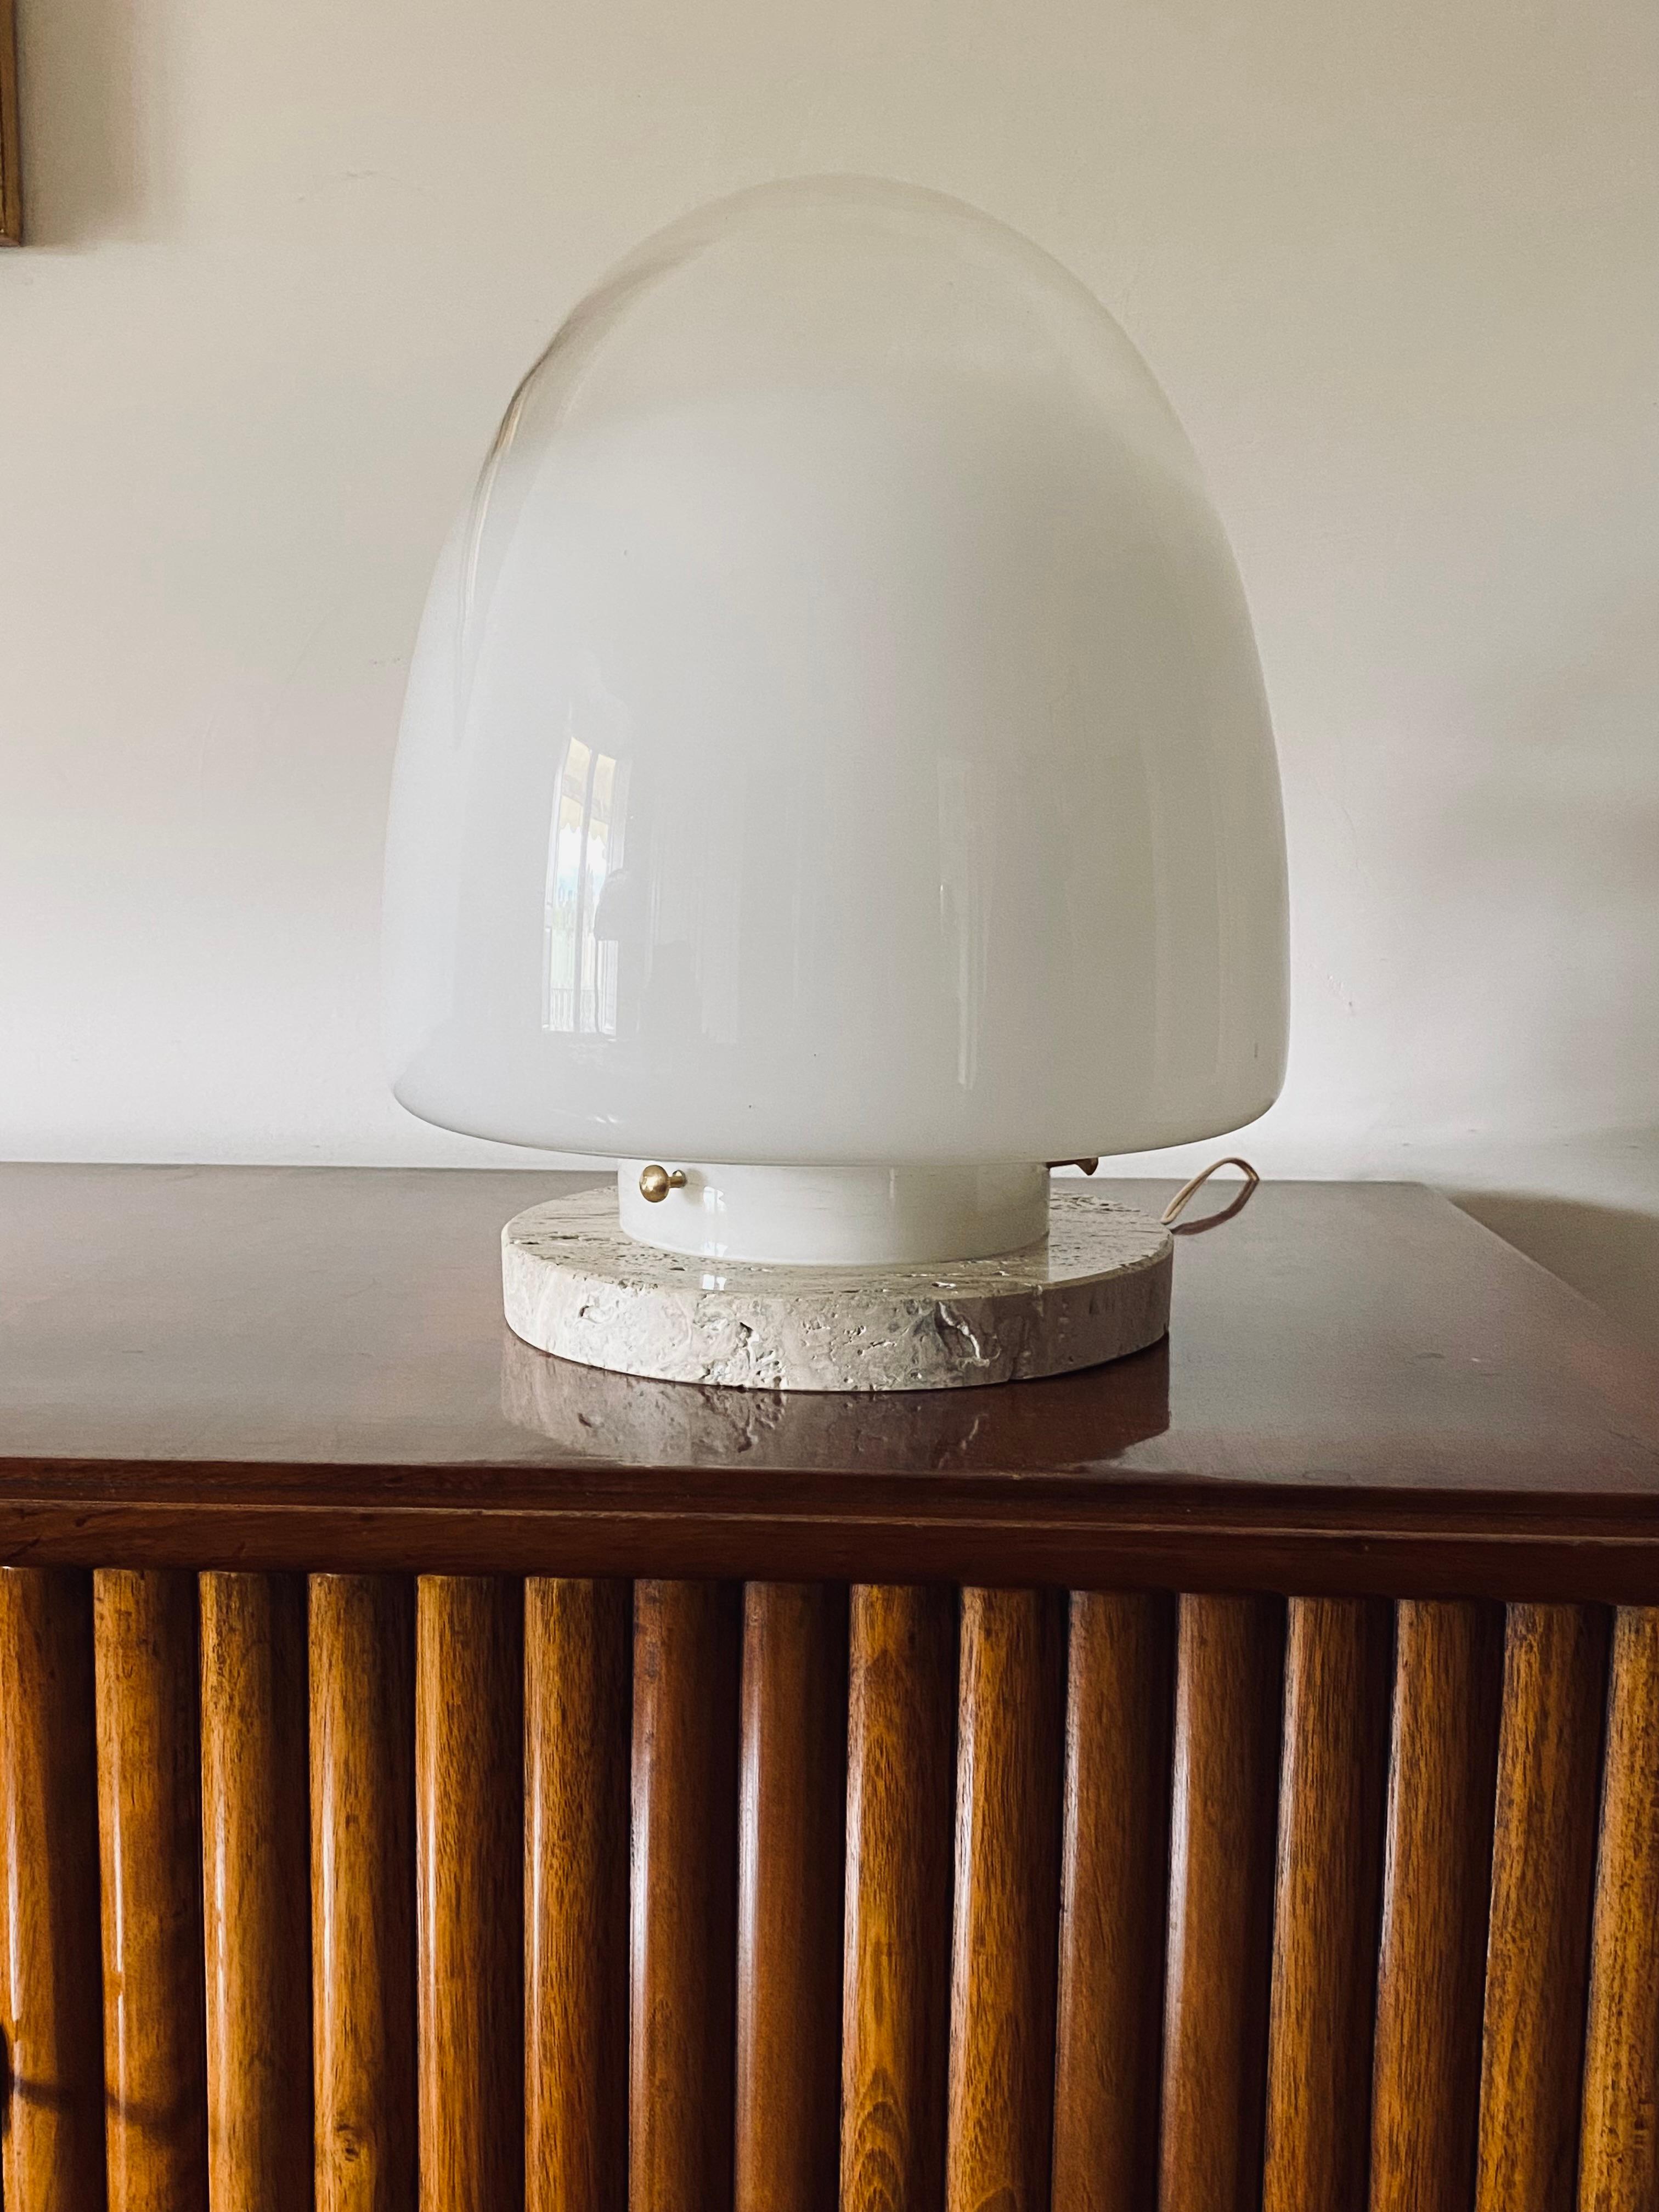 Giusto Toso Murano Kunstglas Tischlampe

Leucos, Italien 1970er Jahre

Sockel aus Travertin, Messing

H: 43 cm Durchmesser: 32 cm

Bedingungen: ausgezeichnet, keine Mängel